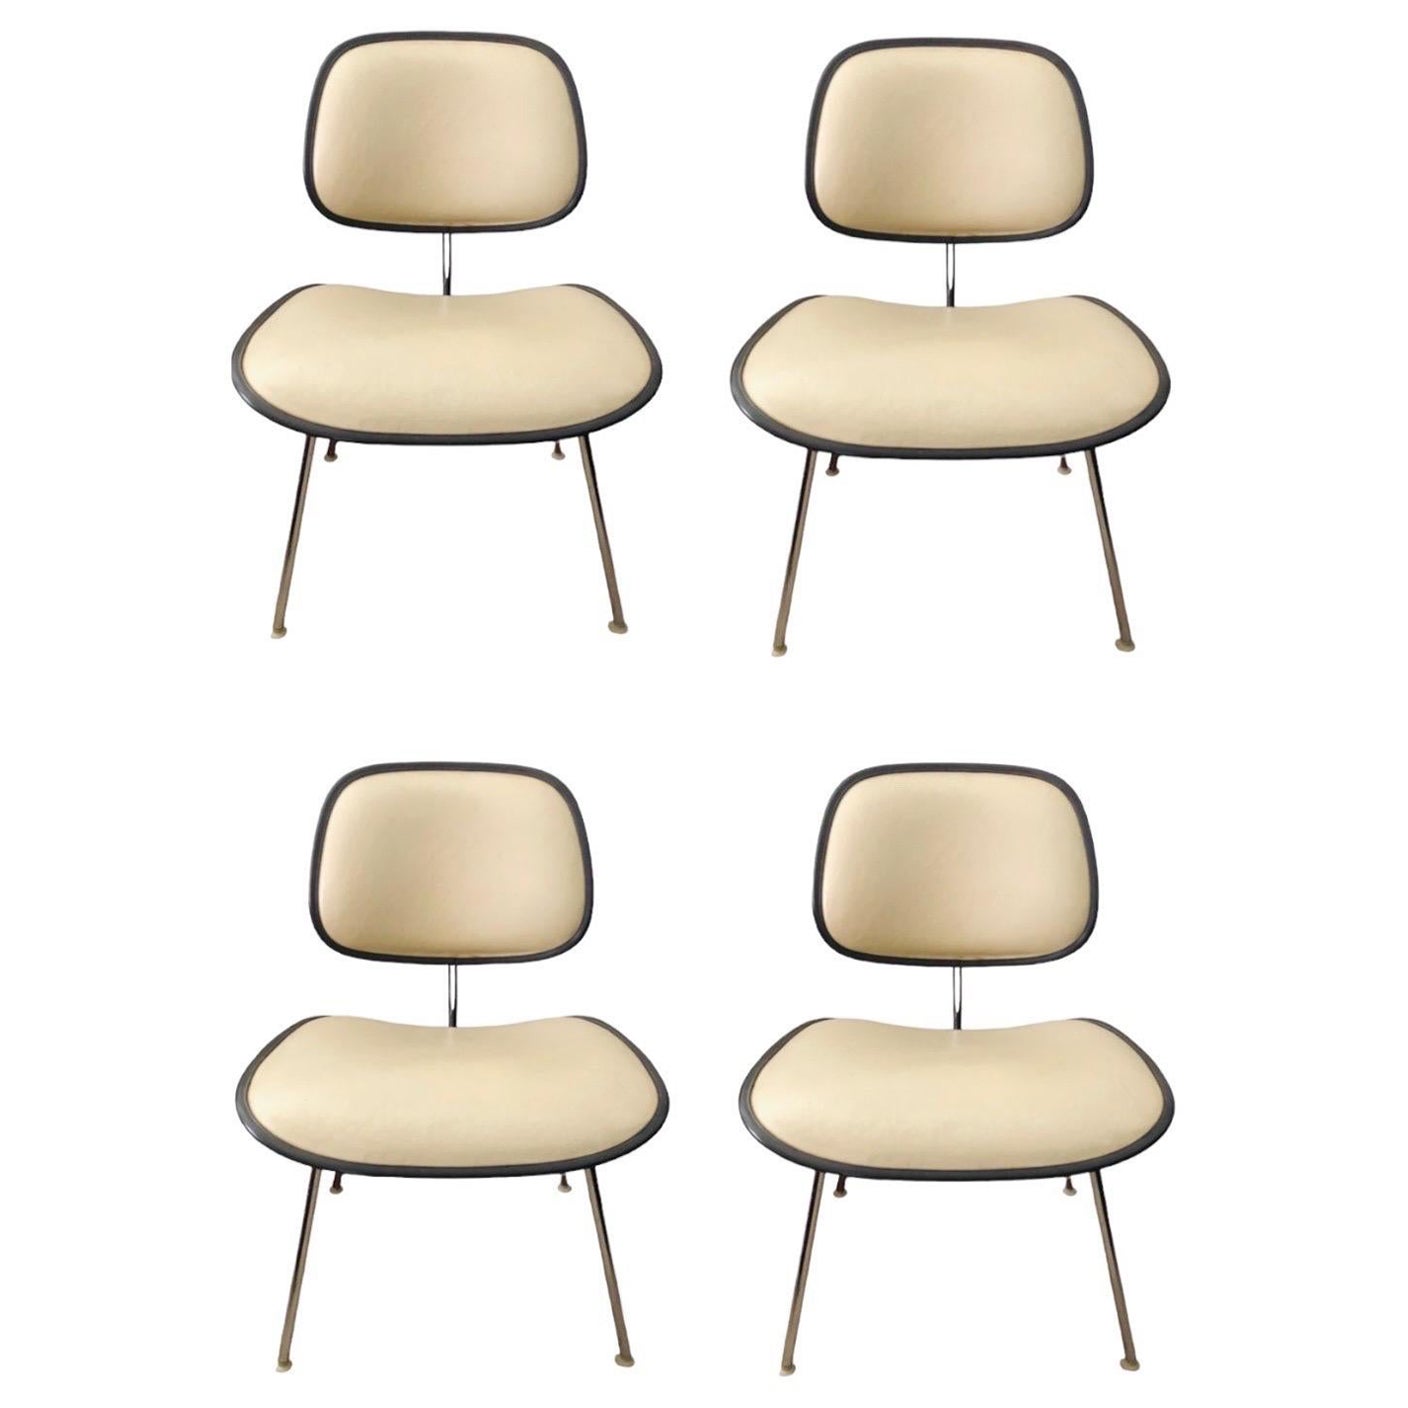 Il s'agit d'une paire de chaises DCMU, conçues en 1970 par Charles et Ray Eames pour Herman Miller. Il s'agit d'une version plus récente et rembourrée de la chaise DCM classique en bois courbé.

L'assise et le dossier sont en plastique moulé et sont